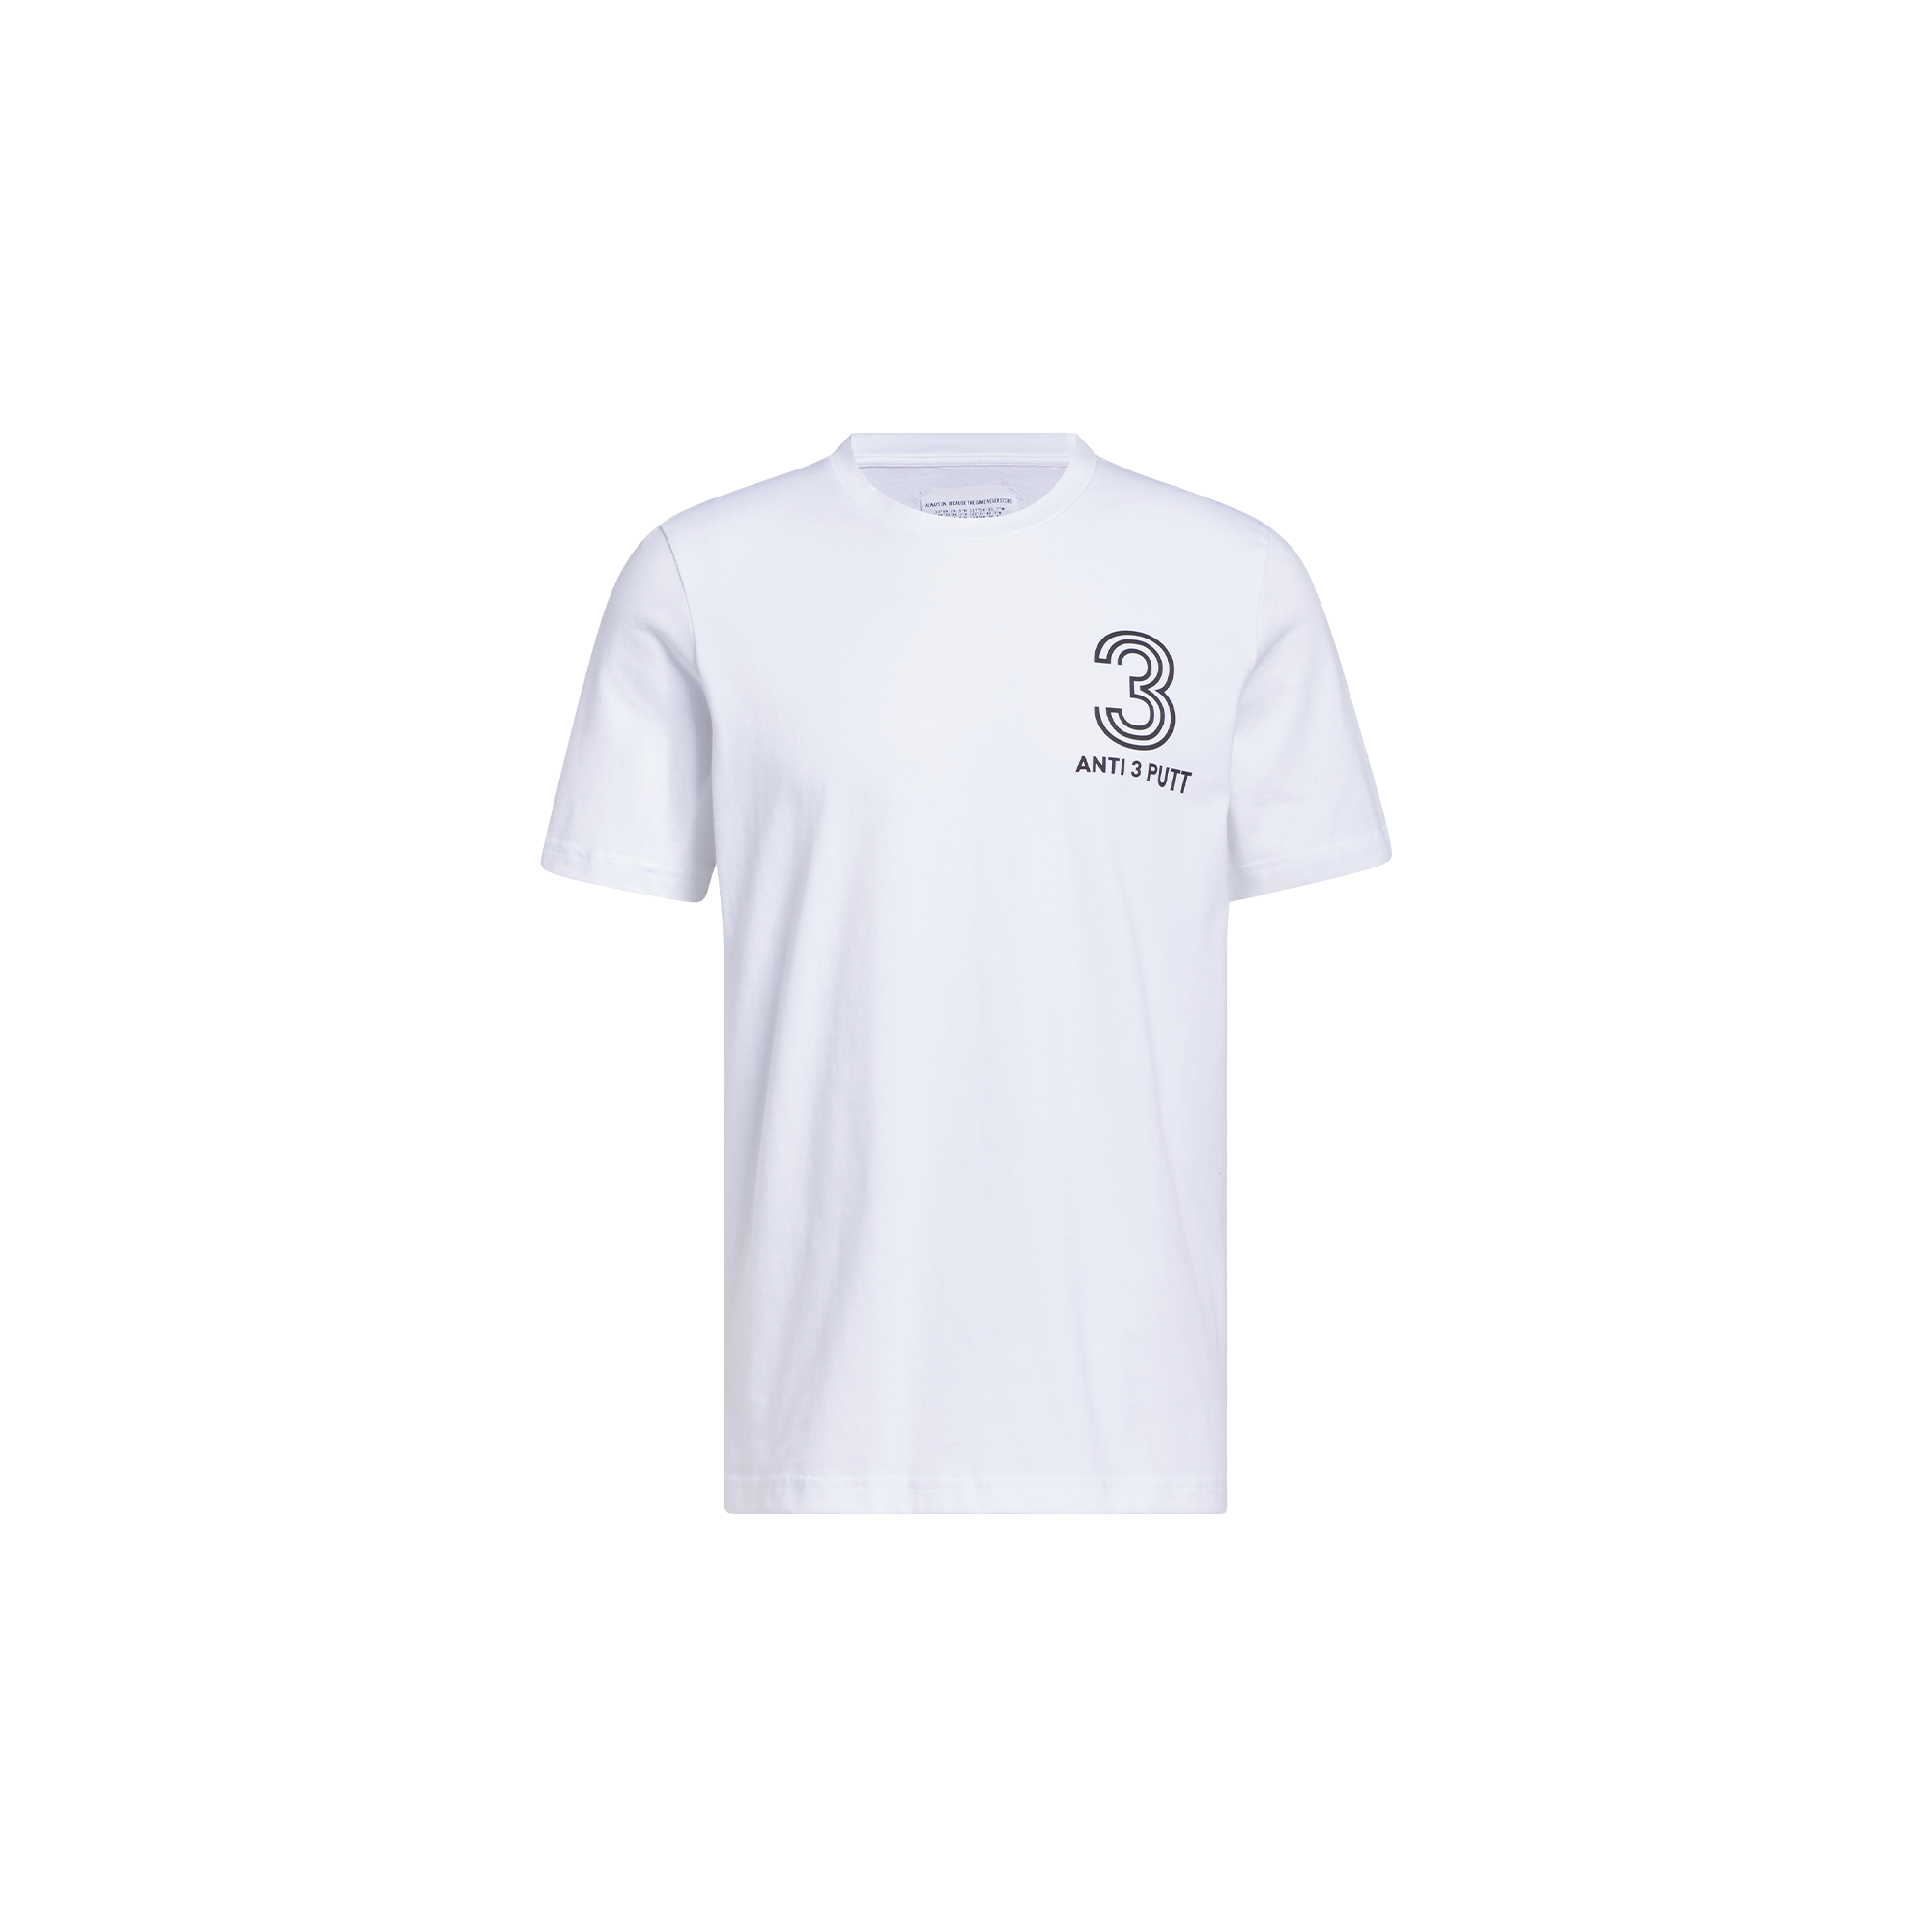 adidas Adicross Anti 3 Putt T-Shirt White